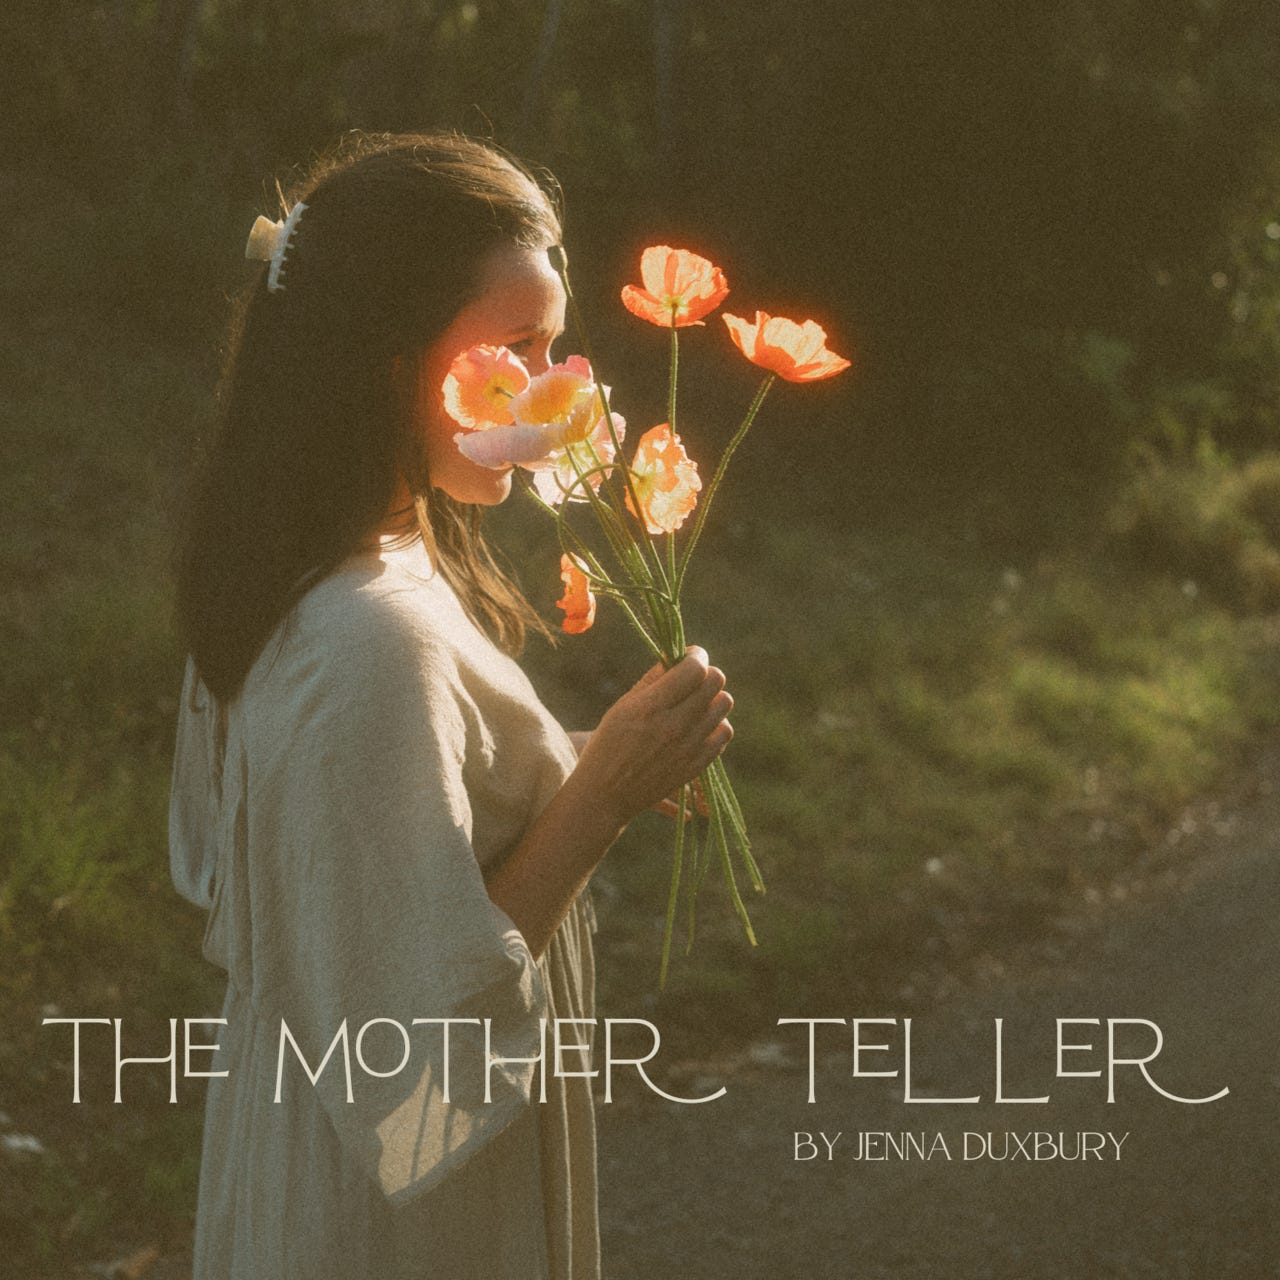 The Mother Teller